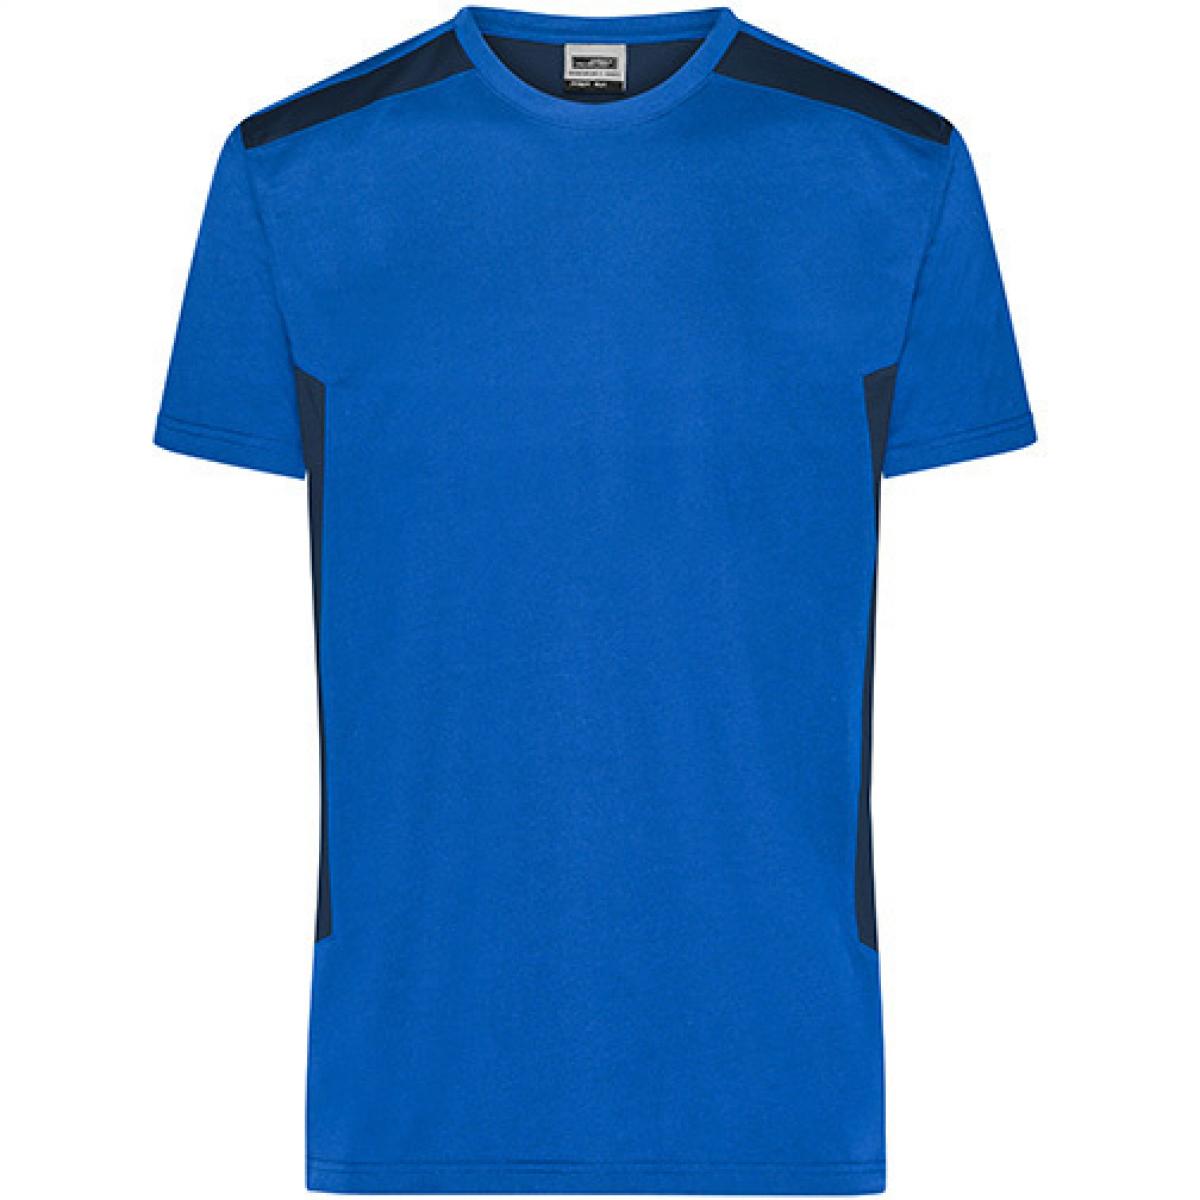 Hersteller: James+Nicholson Herstellernummer: JN1824 Artikelbezeichnung: Herren T, Men‘s Workwear T-Shirt -STRONG-Waschbar bis 60 °C Farbe: Royal/Navy